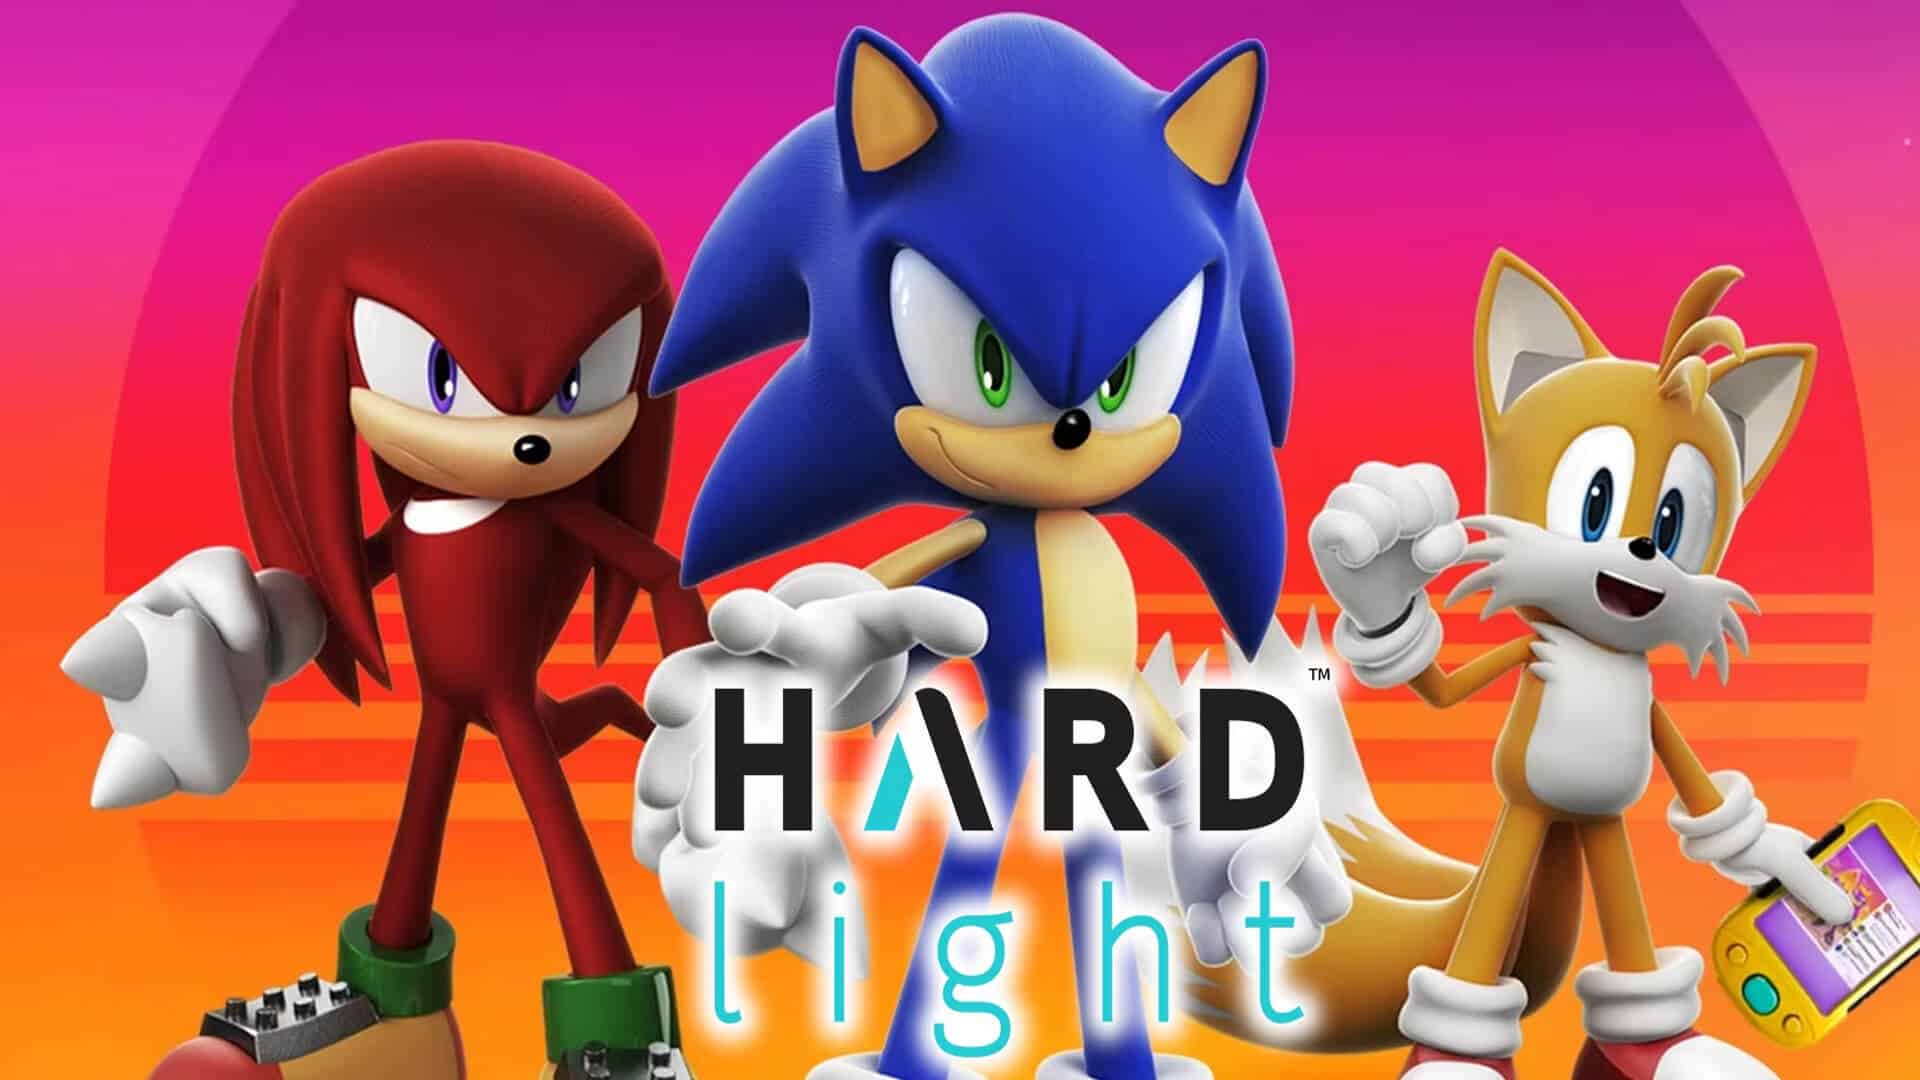 Hardlight-Sonic-Mobile